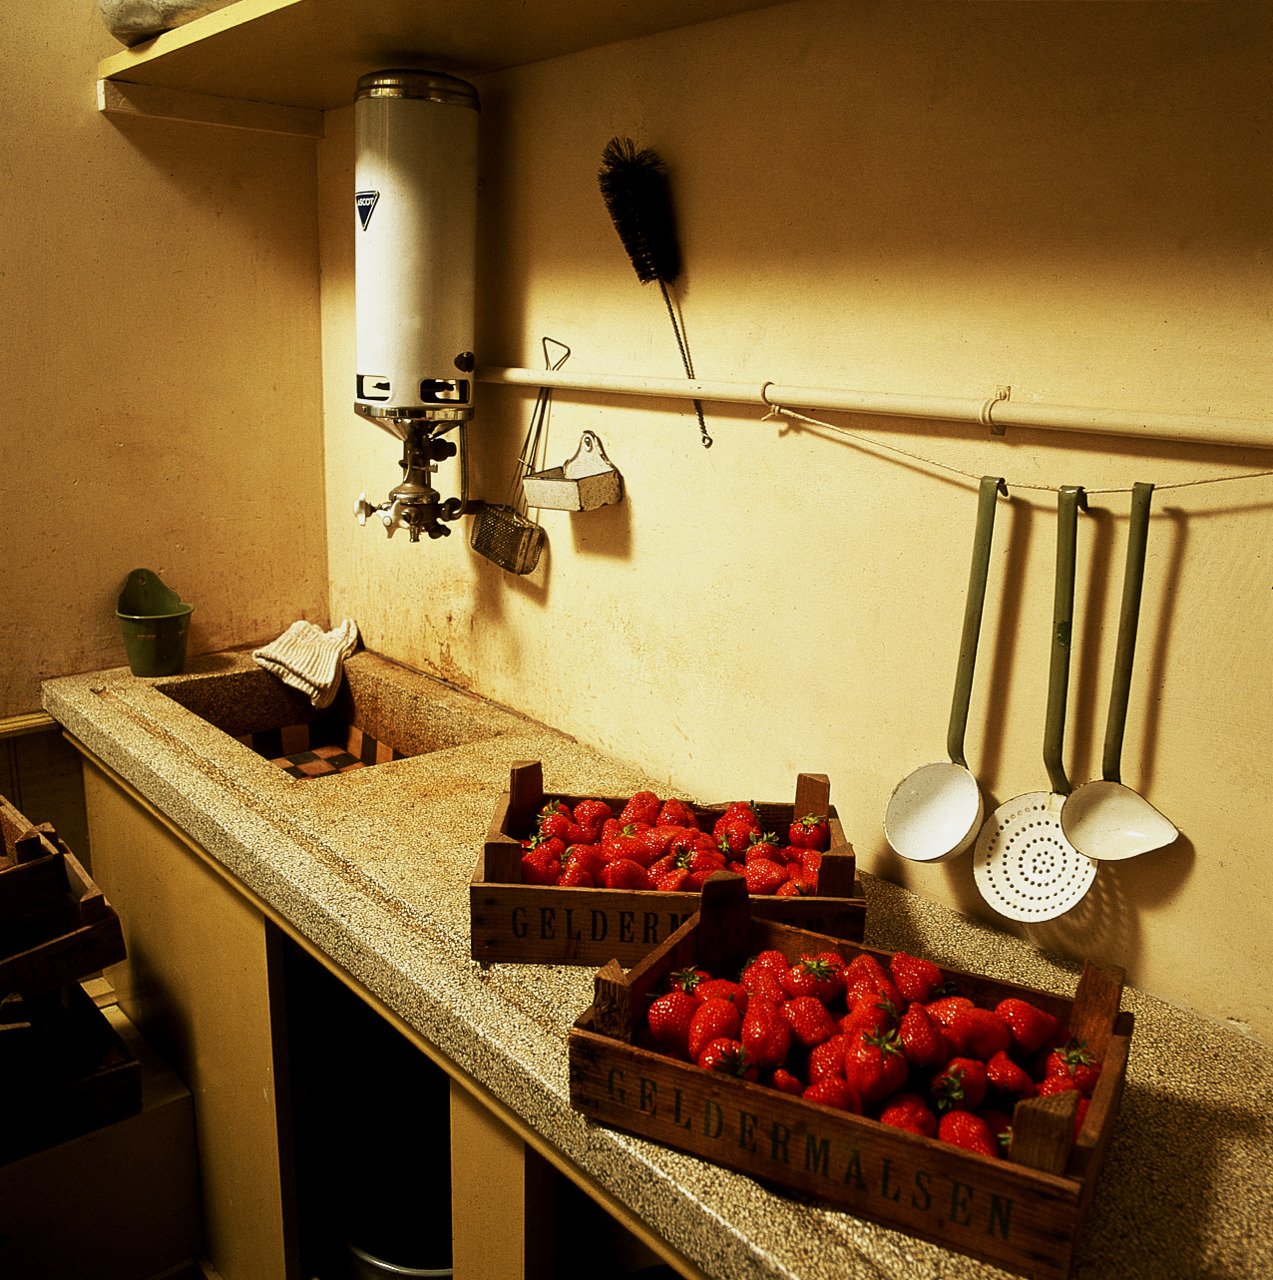 Fresas en el mostrador de la cocina de oficina, reconstrucción (1999).